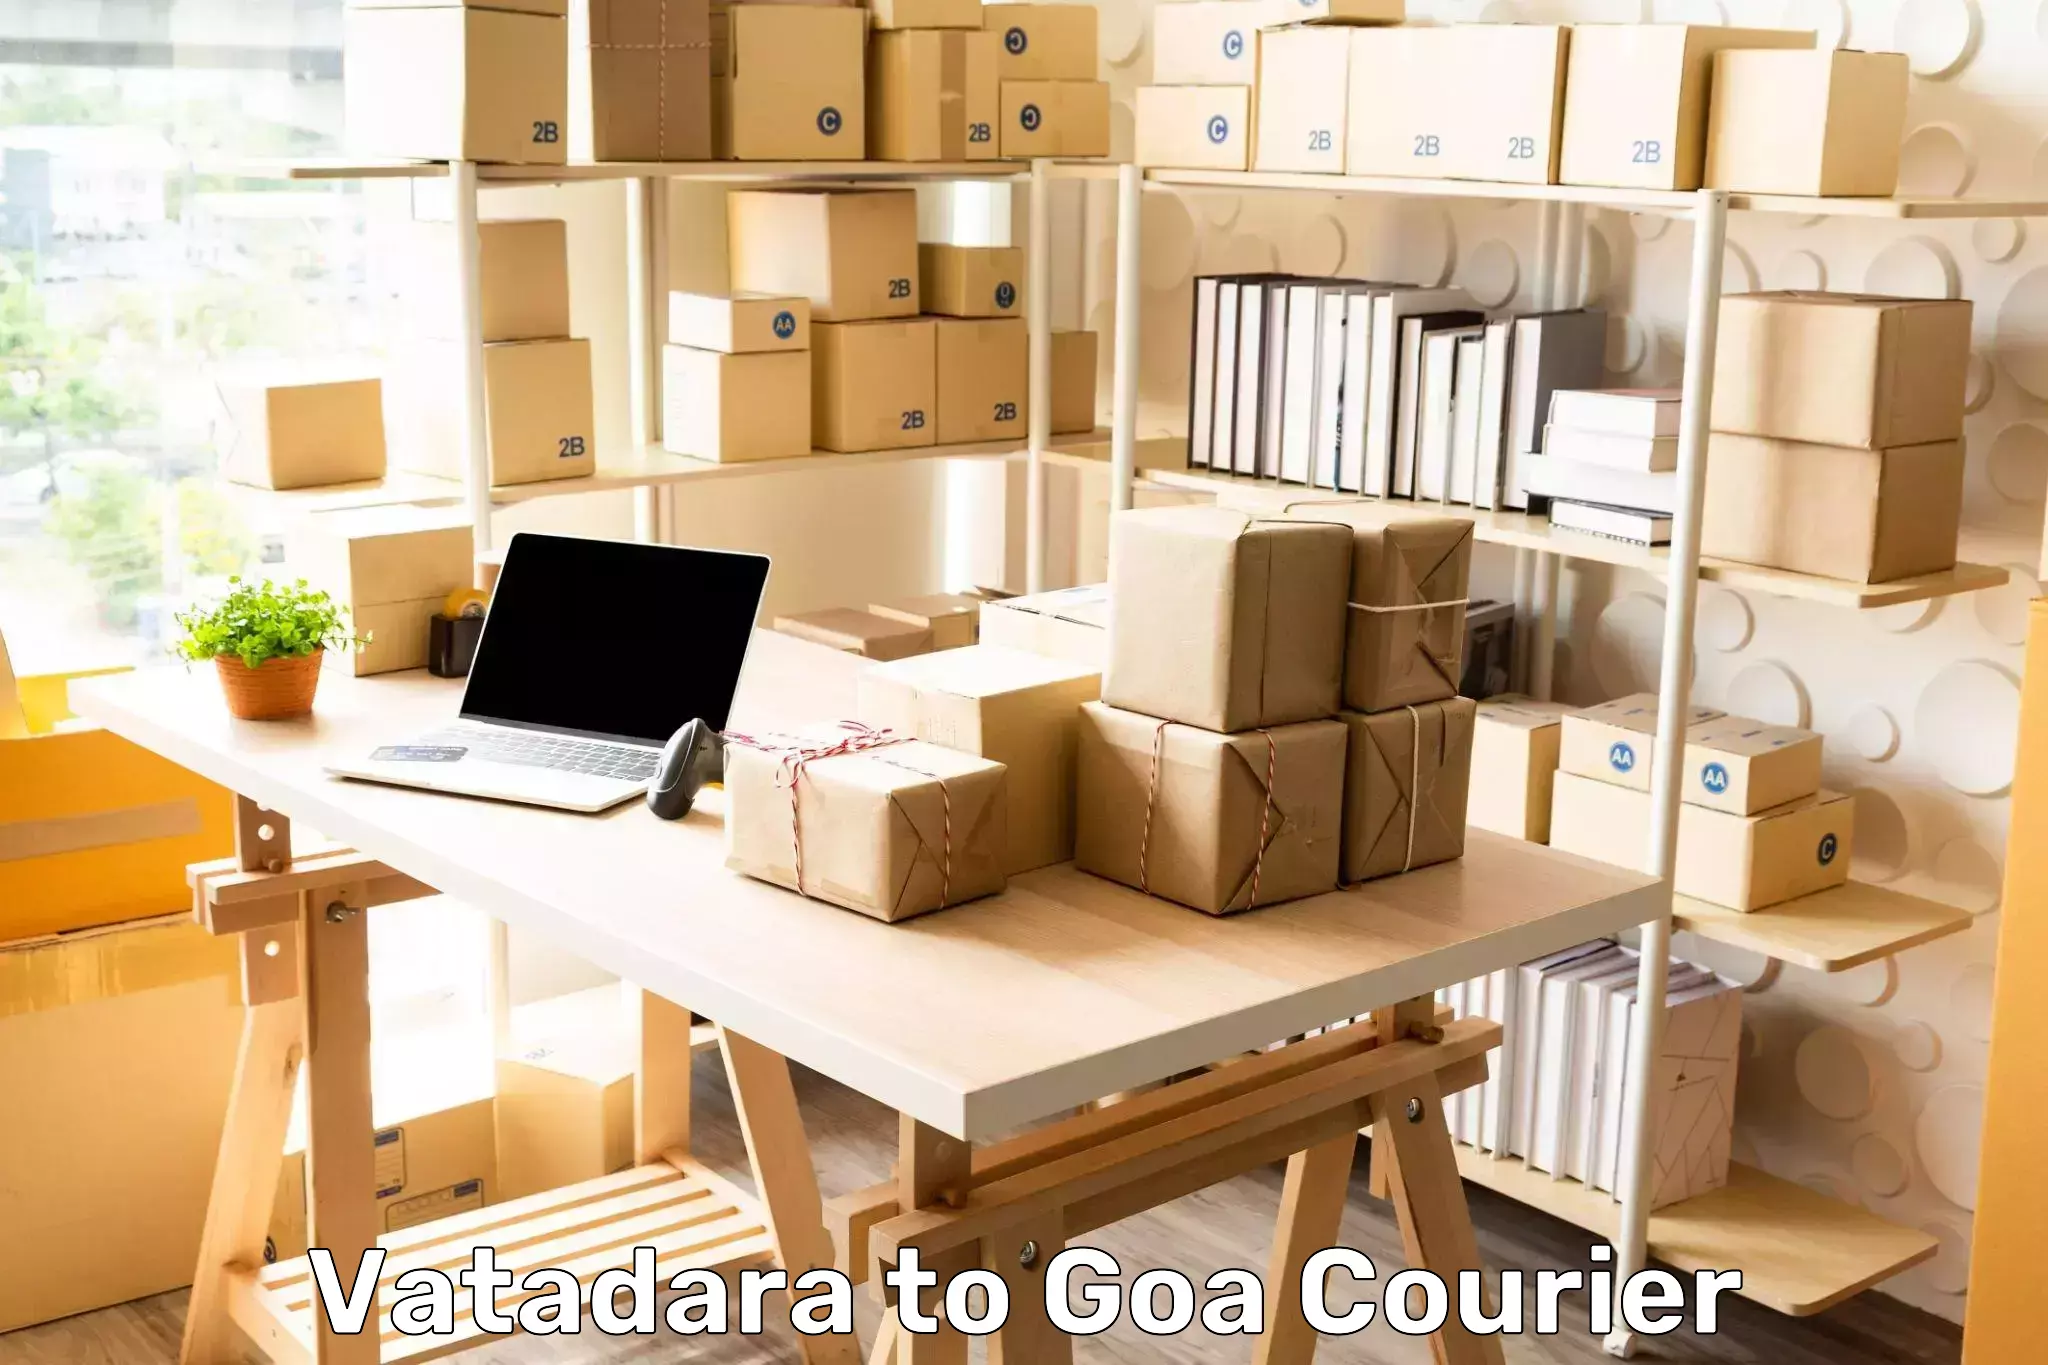 24-hour courier services Vatadara to Margao